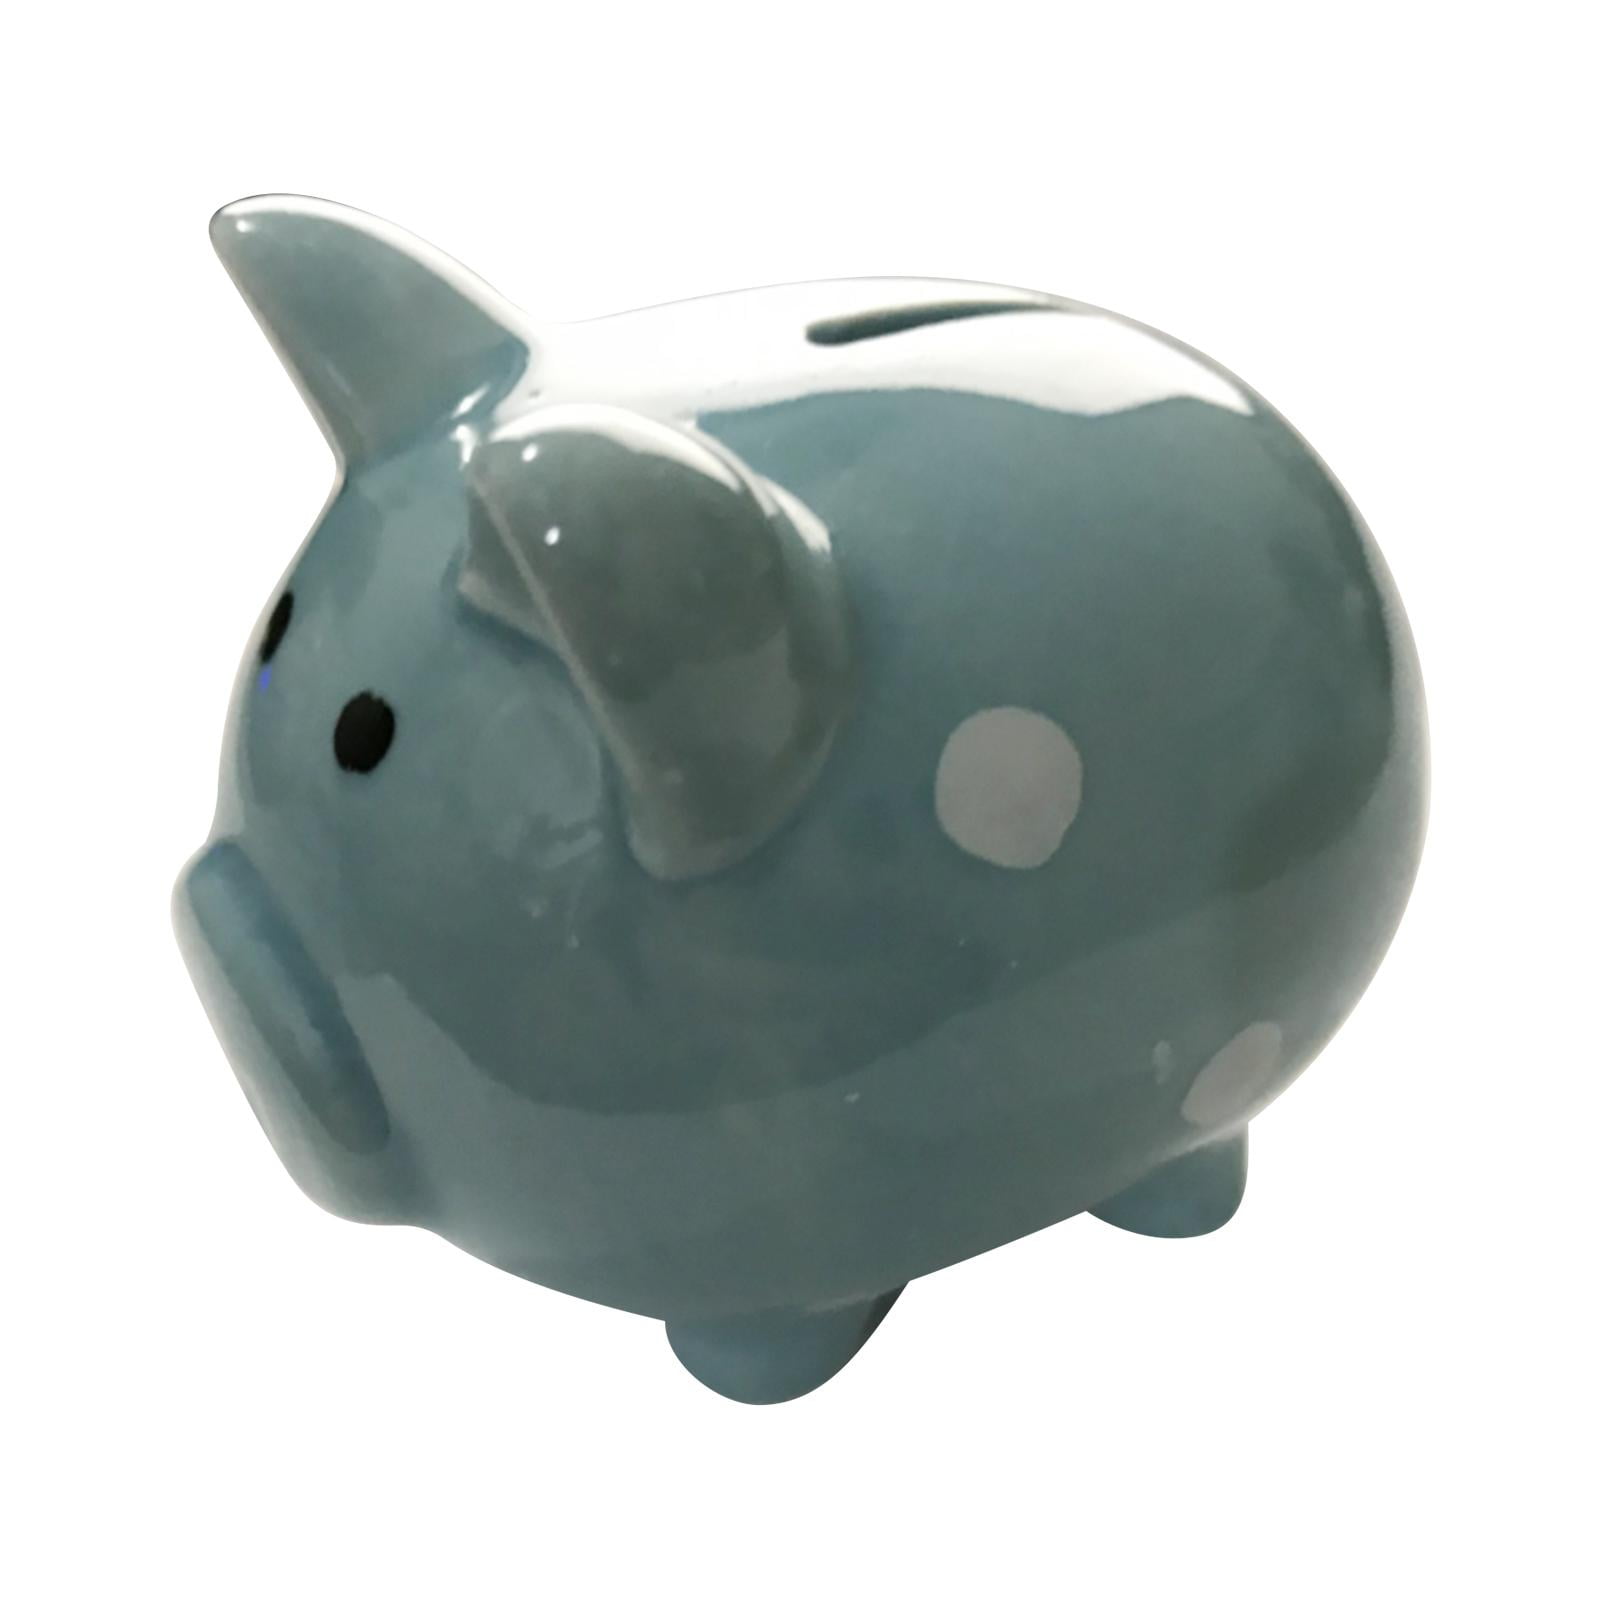 Pig Piggy Bank Money Box For Kids Toys Gift For Kids Piggy Bank Home Room Decor Big Money Box